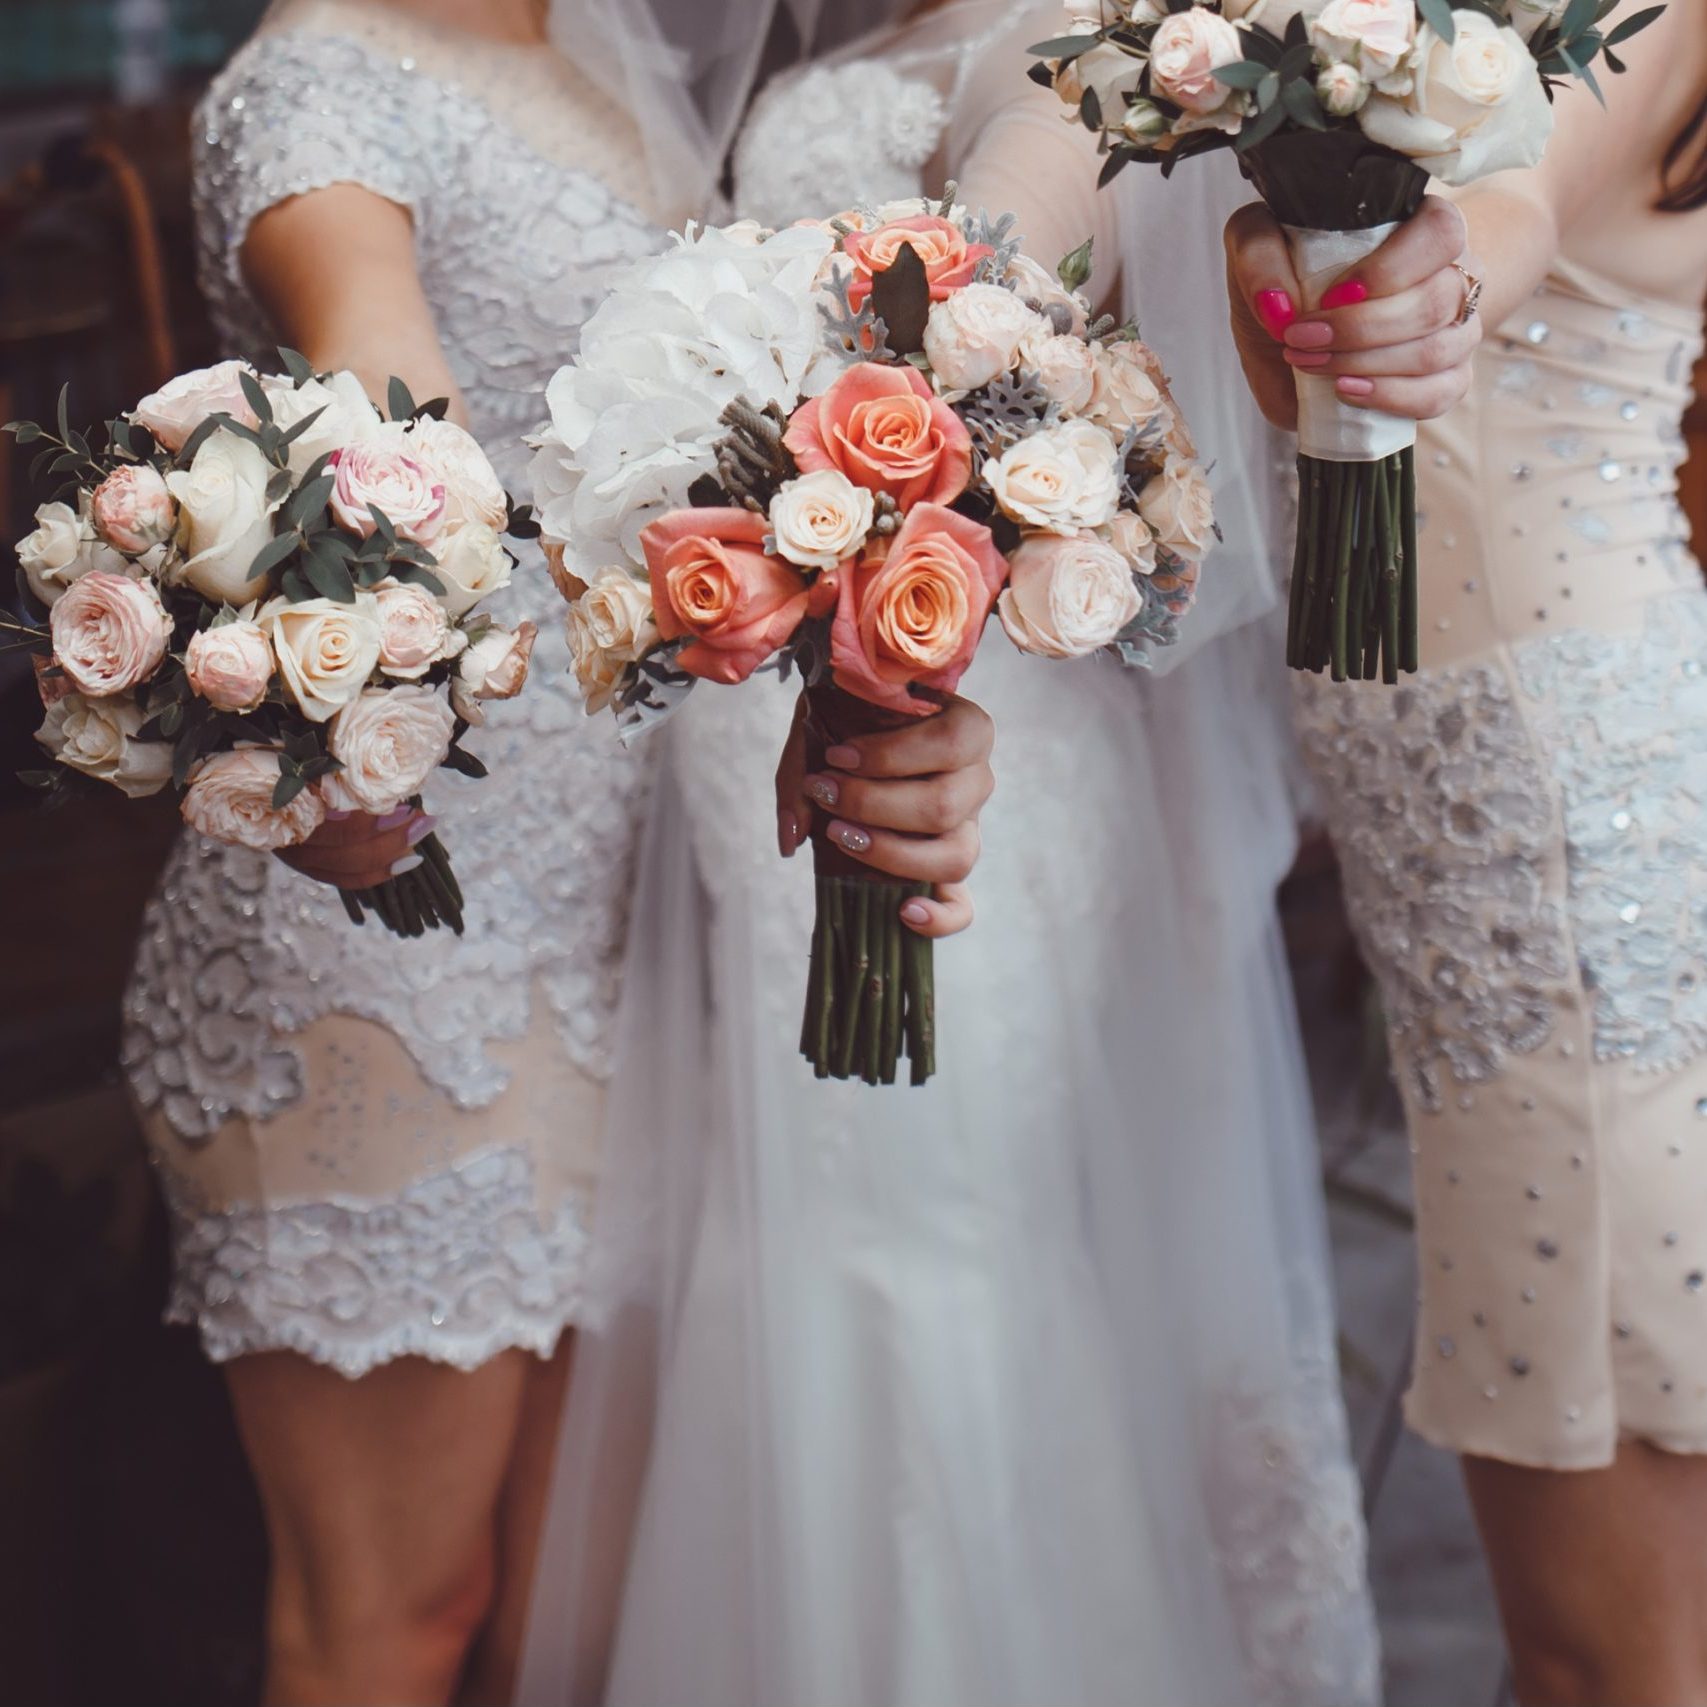 Der perfekte Brautstrauss - passend zum Kleid